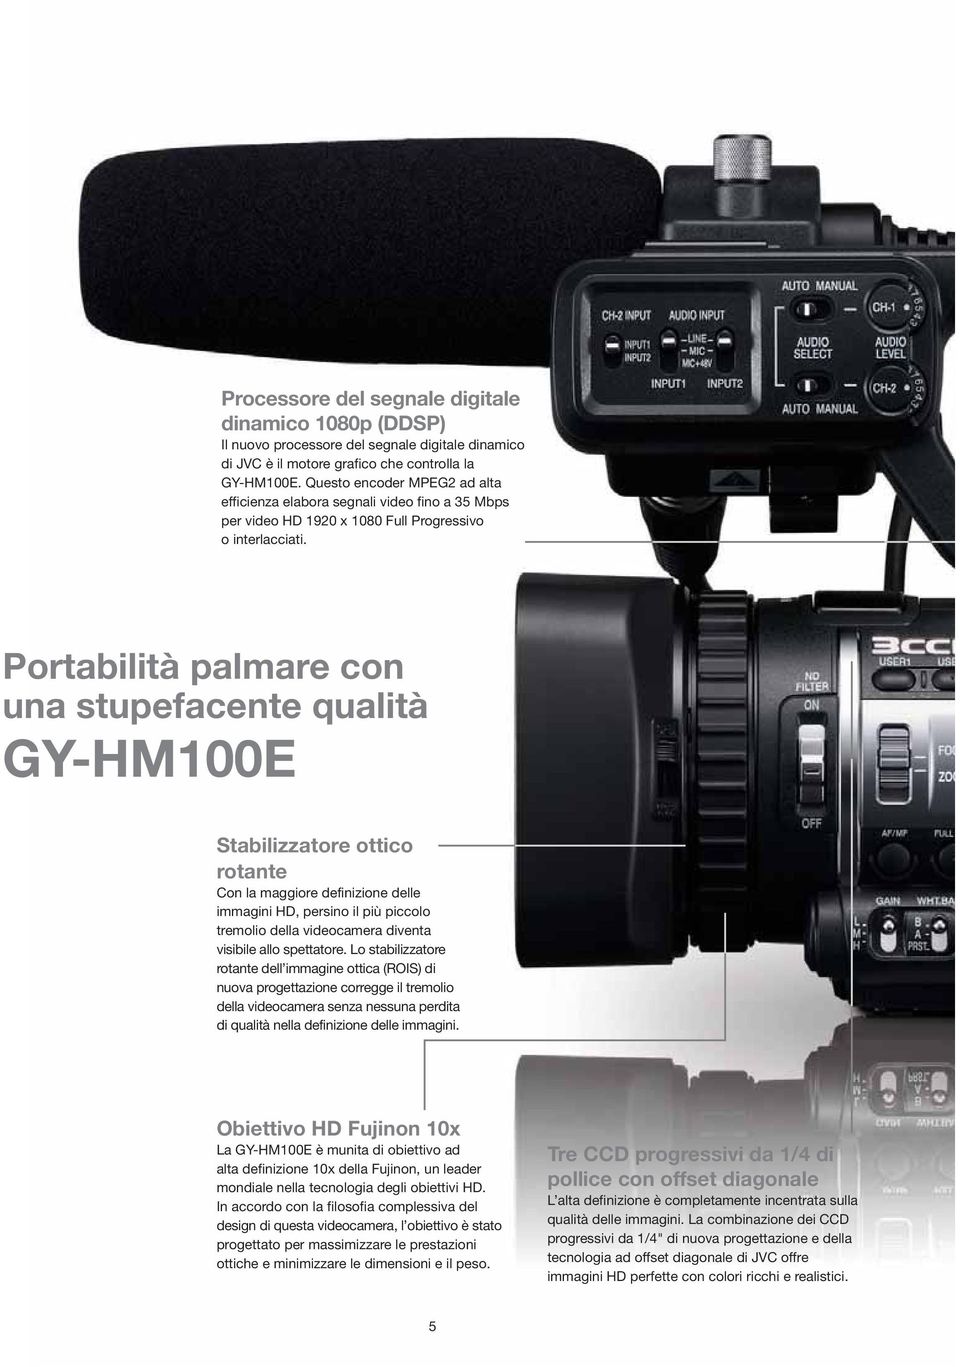 Portabilità palmare con una stupefacente qualità GY-HM100E Stabilizzatore ottico rotante Con la maggiore definizione delle immagini HD, persino il più piccolo tremolio della videocamera diventa